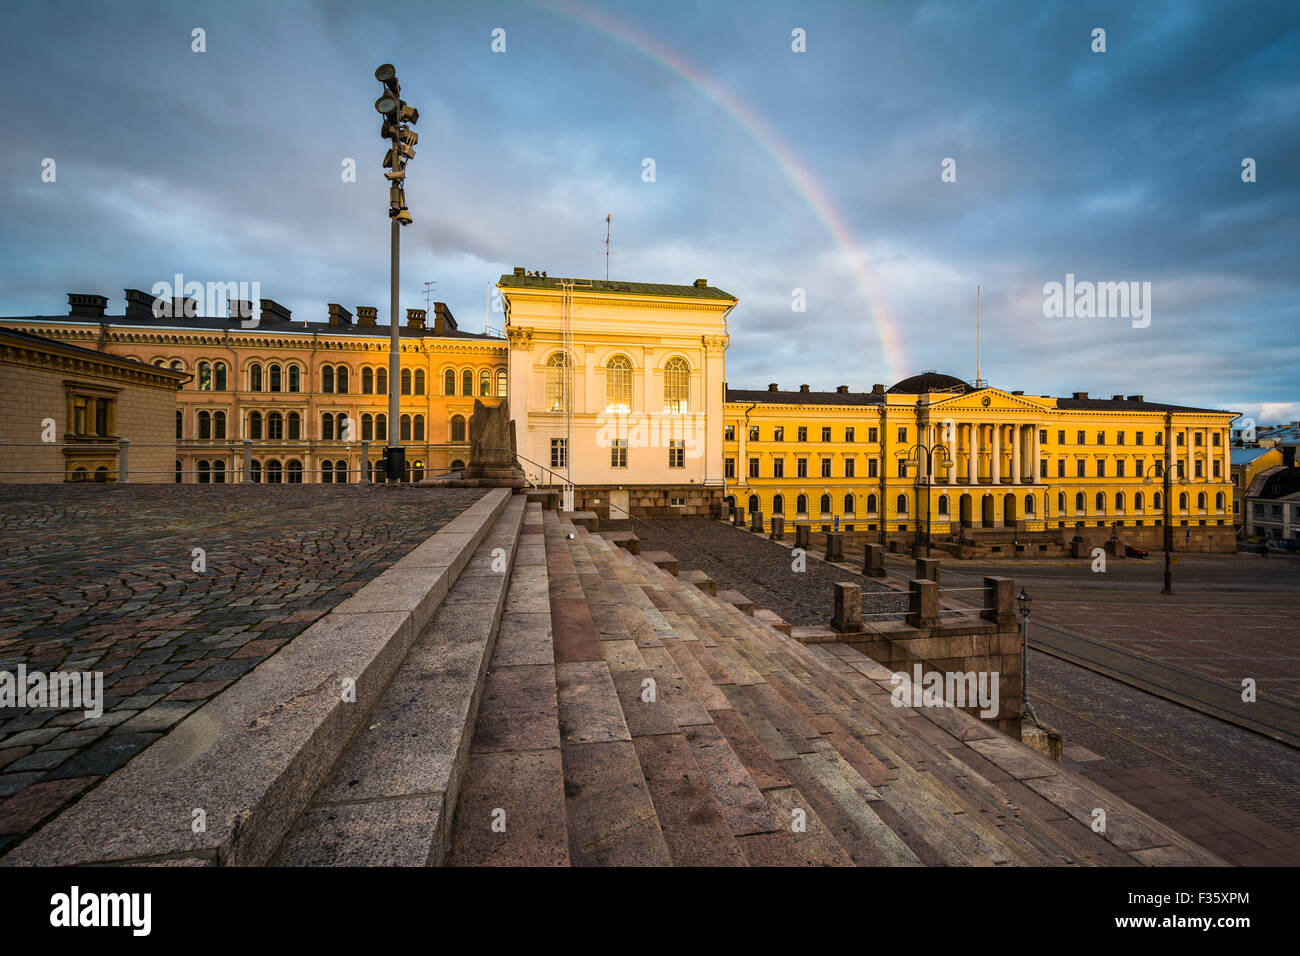 Rainbow su Senaatintori, la Piazza del Senato al tramonto, a Helsinki in Finlandia. Foto Stock